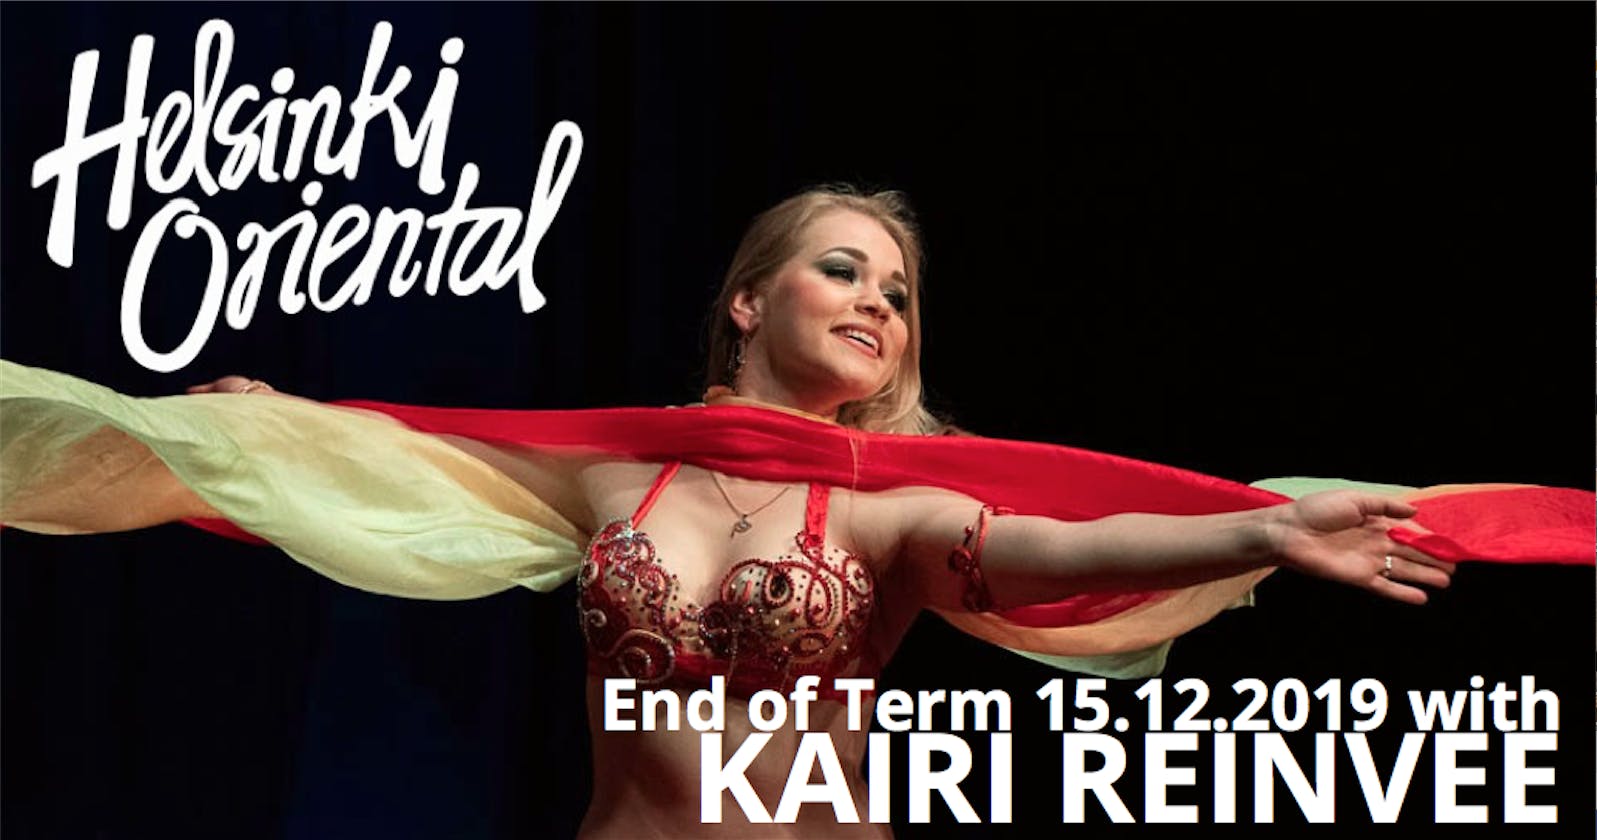 Helsinki Oriental End of Term 15.12.2019 with Kairi Reinvee